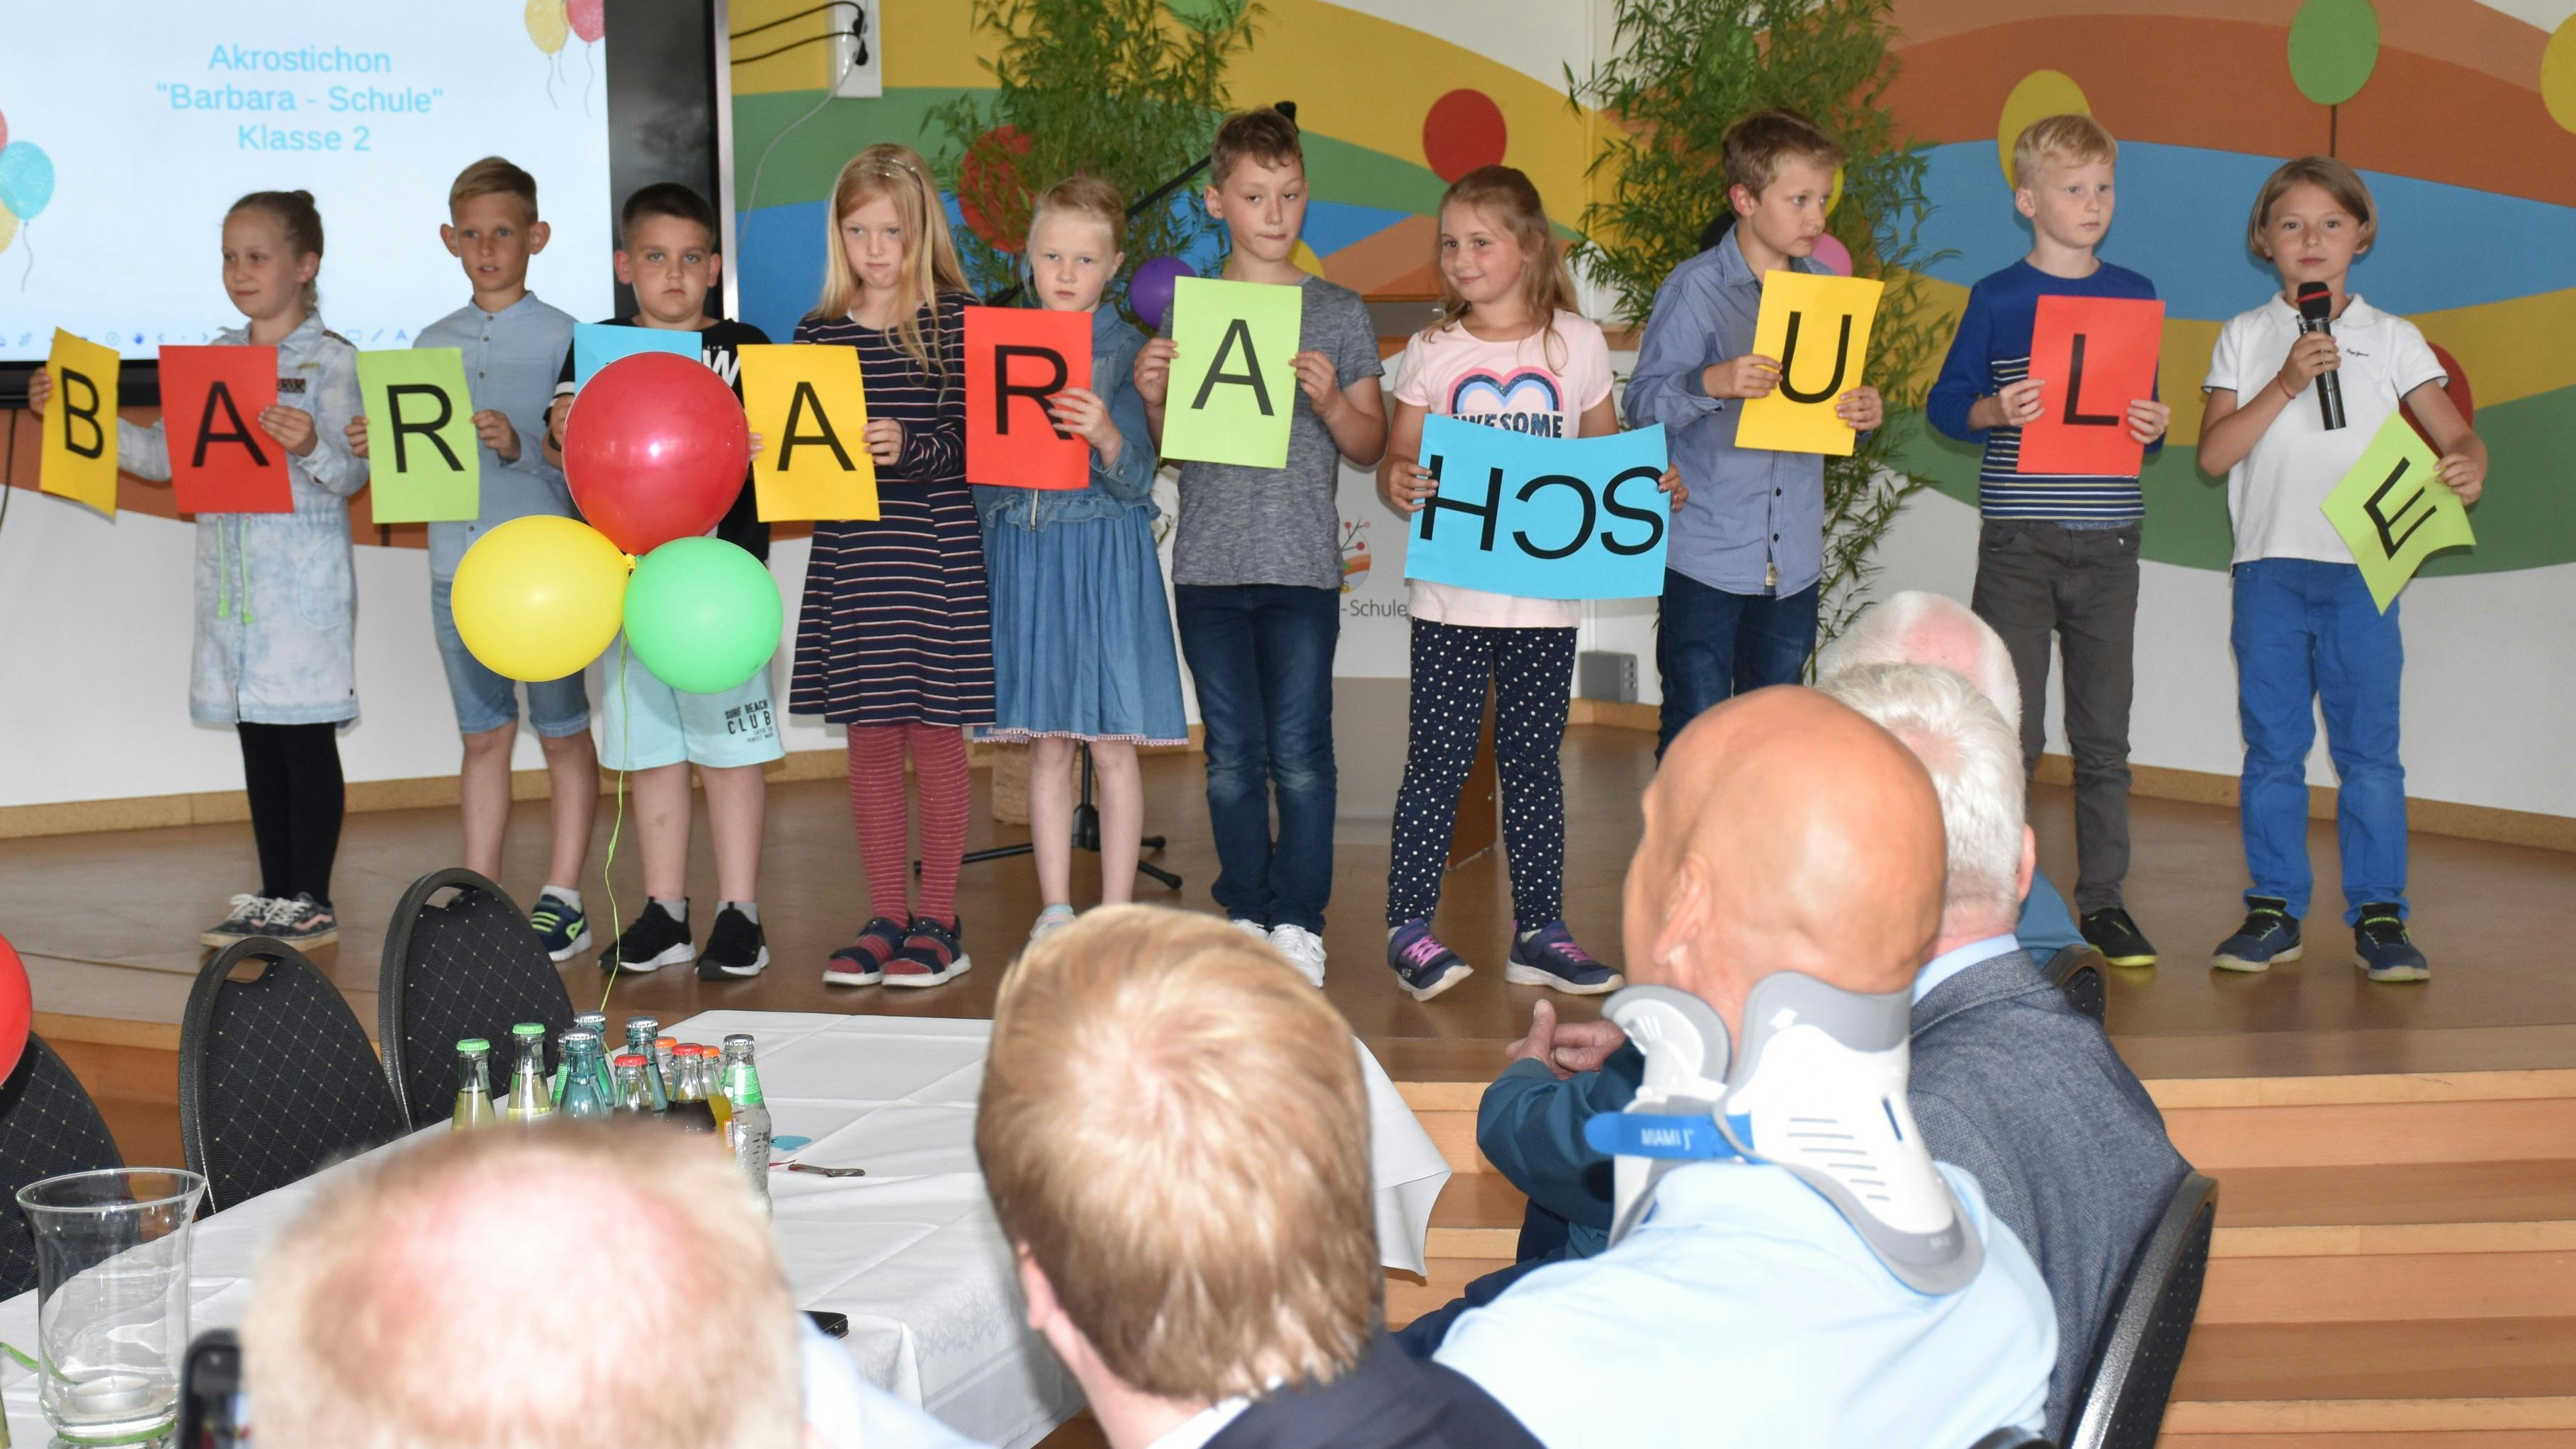 Großer Auftritt von kleinen Schülern: Die Zweitklässler der Barbara-Schule tragen ihr Akrostichon – eine Gedichtform – souverän vor. Foto: